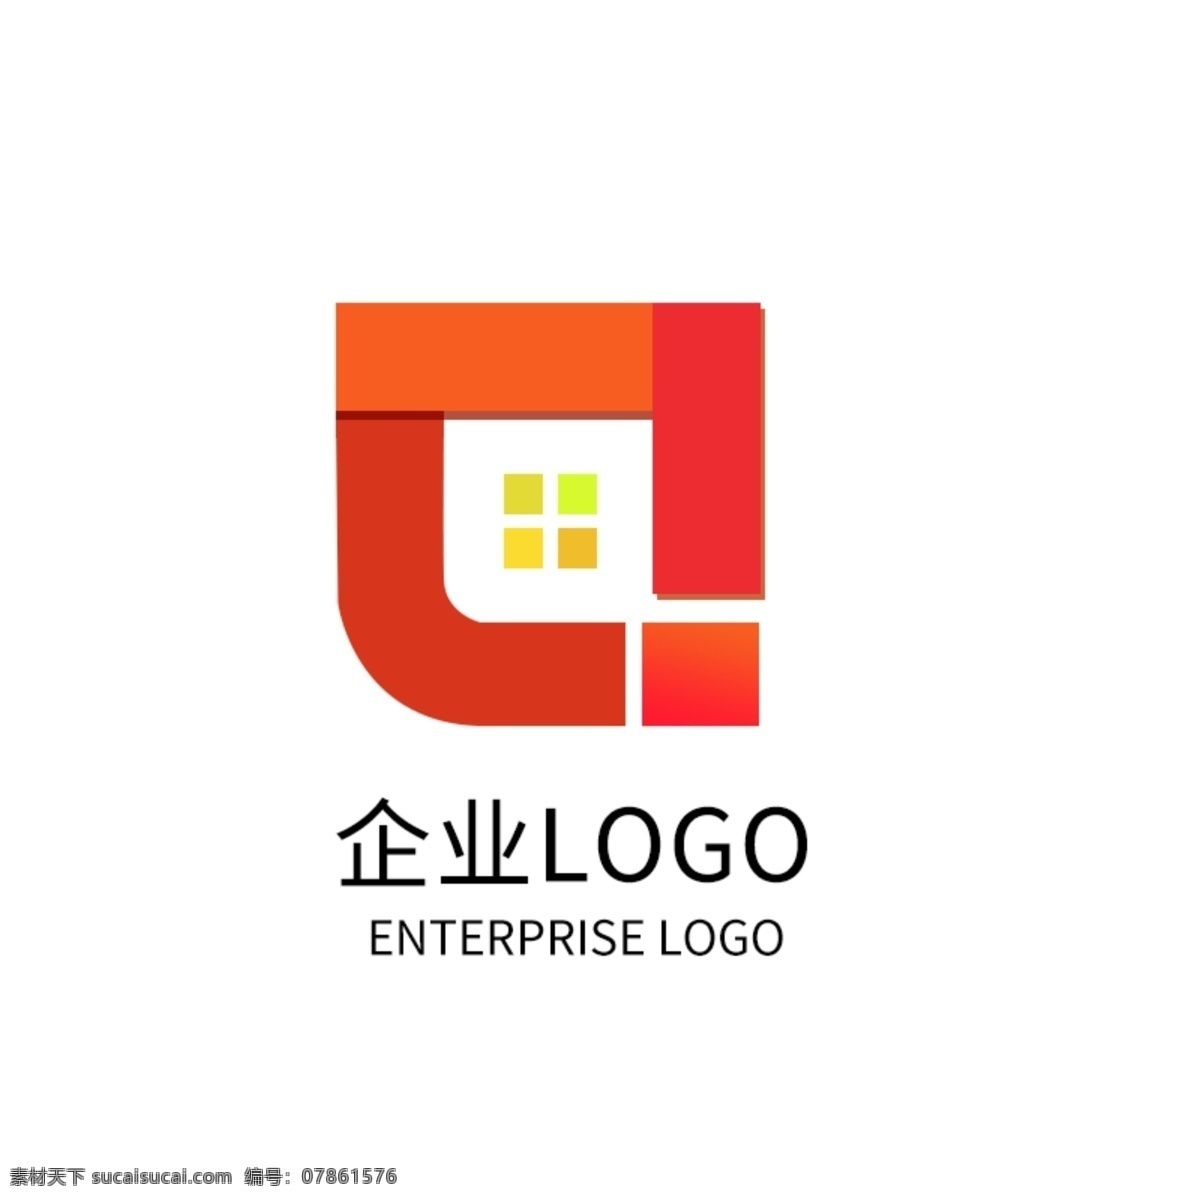 原创 橙色 渐变 企业 公司 logo 标志设计 橙色渐变 企业标志 企业logo 星际